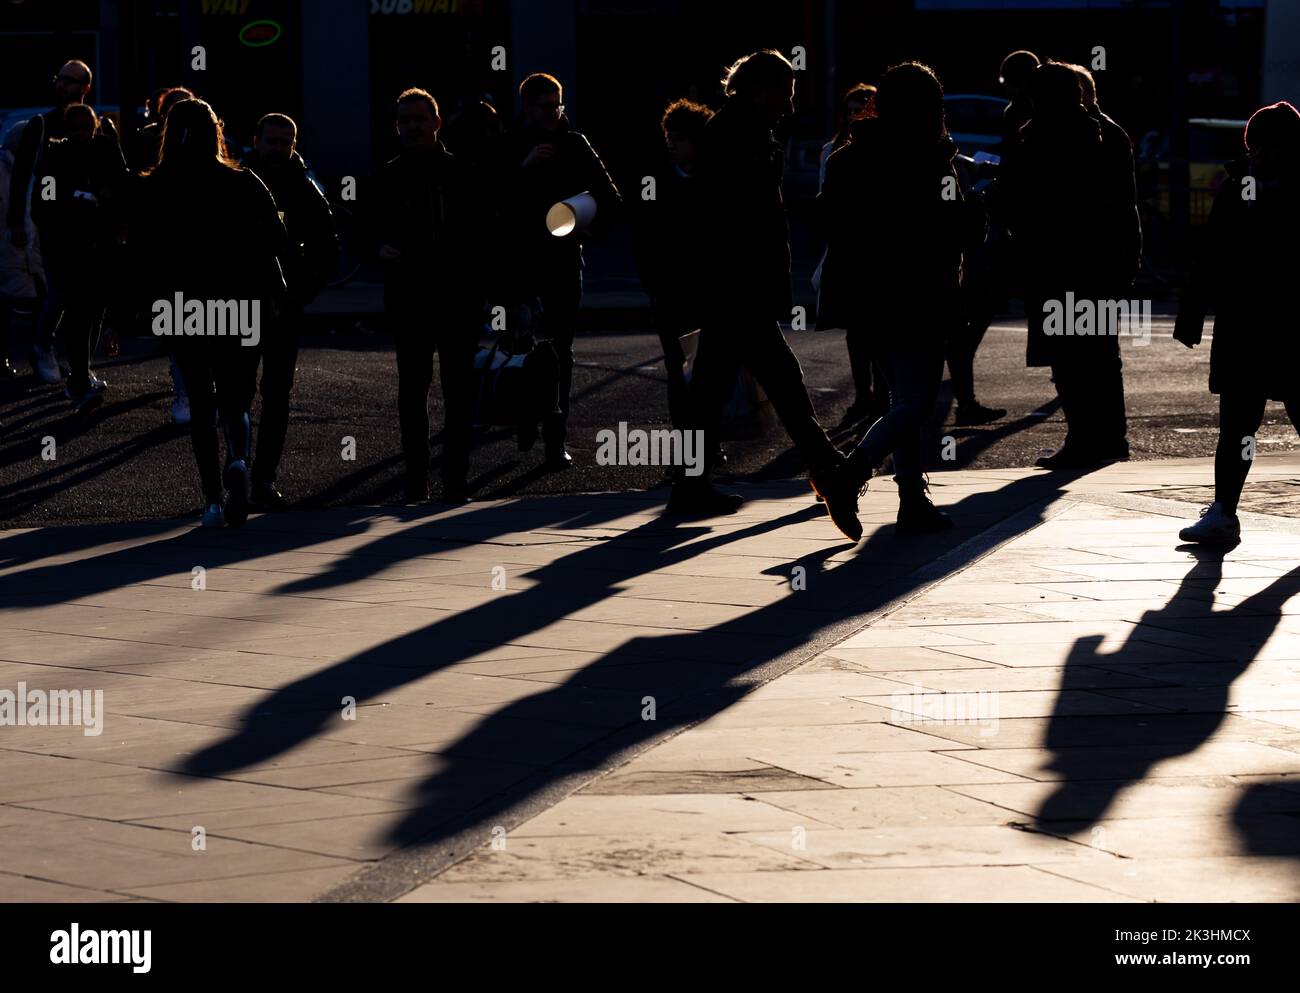 Una folla di persone in silhouette che attraversano la strada creando lunghe ombre.Back illuminato sole dà un'atmosfera drammatica per la fotografia Foto Stock